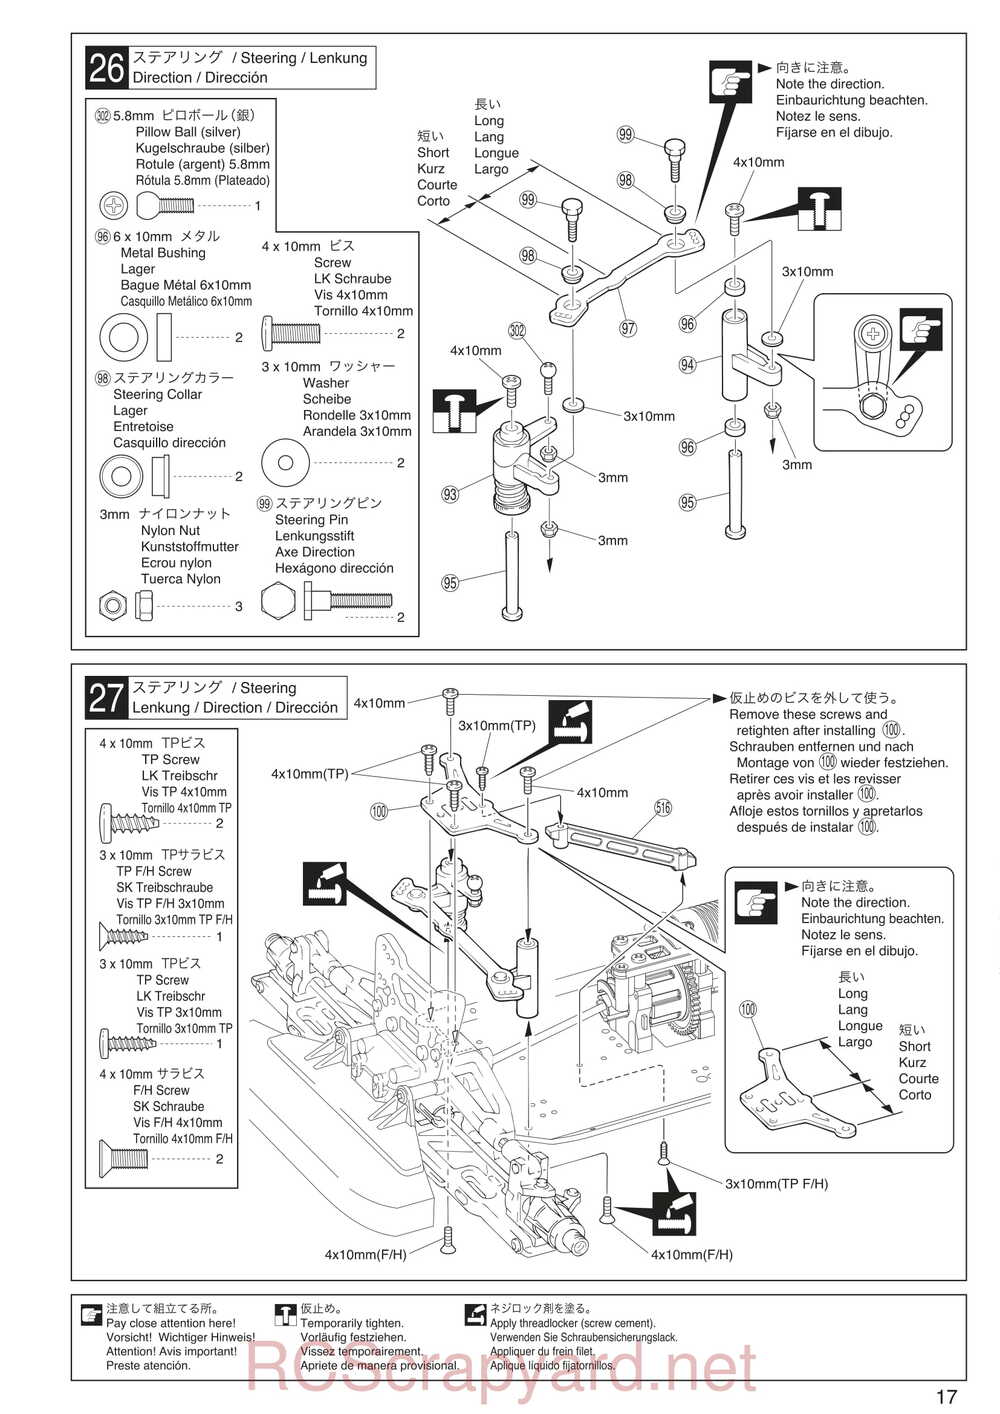 Kyosho - 30935 - Inferno GT2 VE Race-Spec - Manual - Page 17